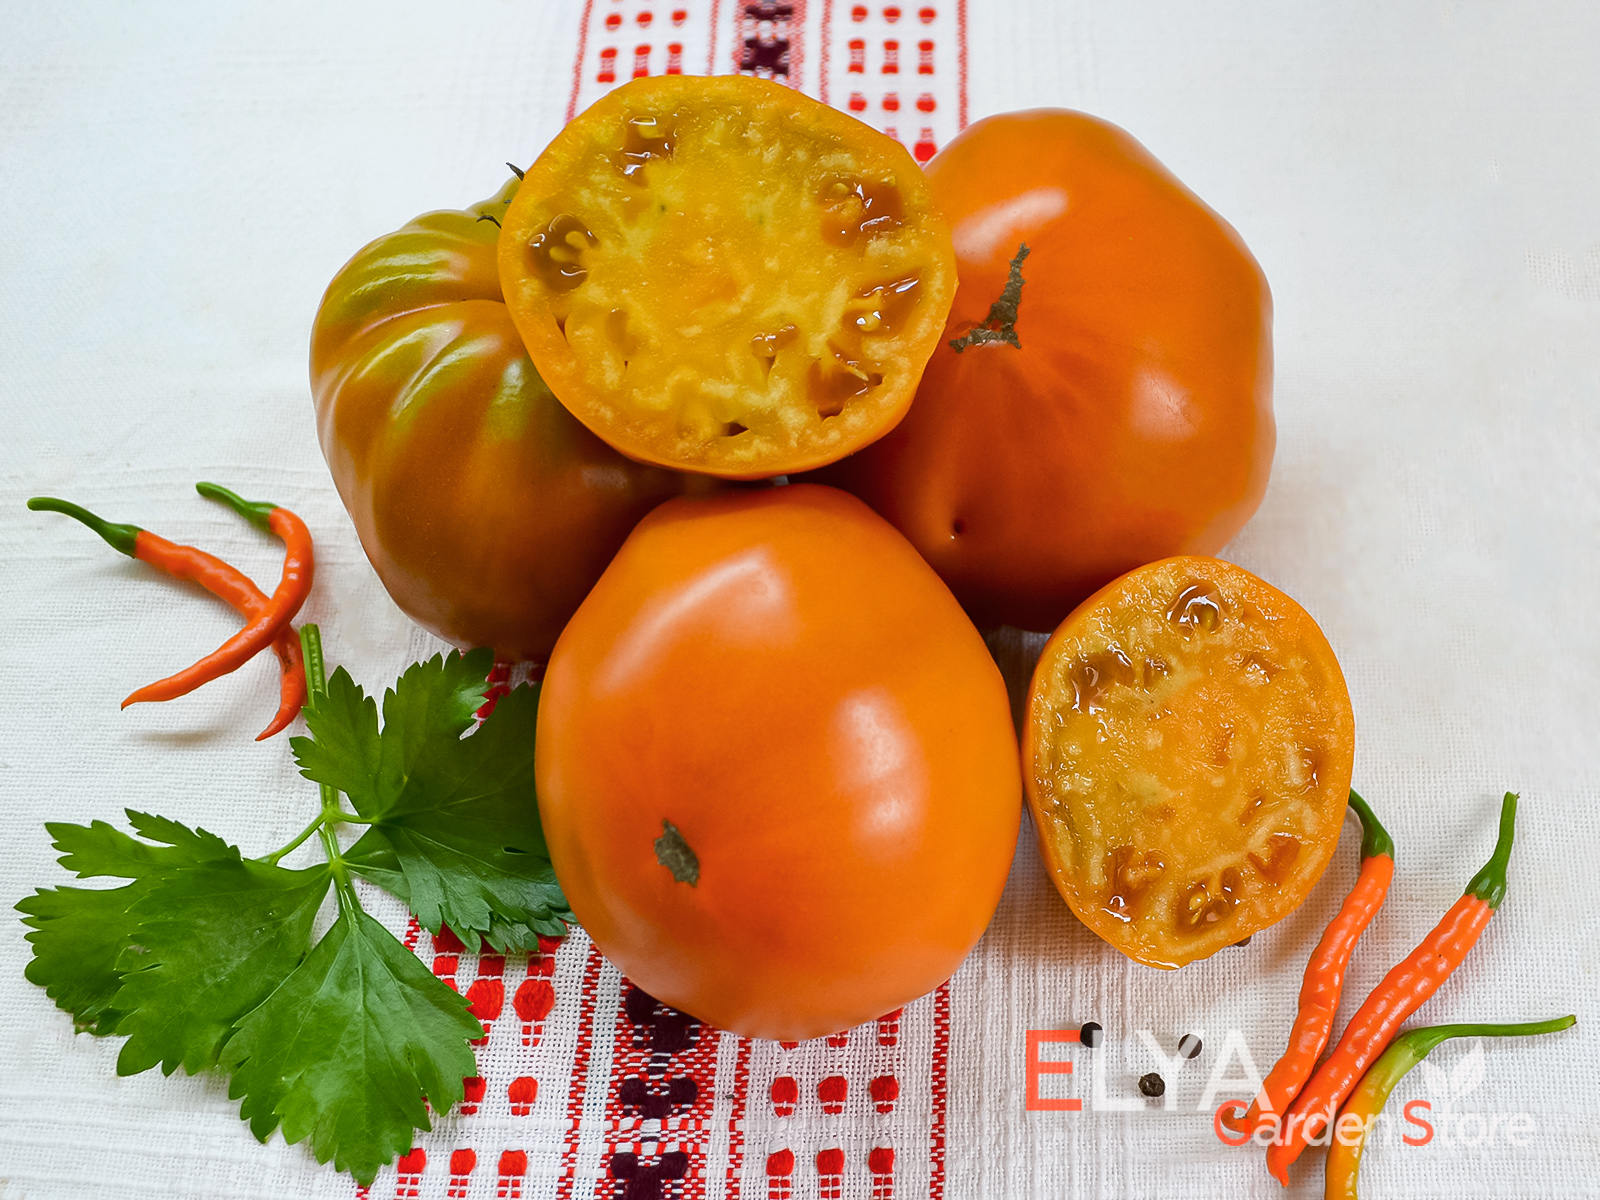 Коллекционный сорт томата Ярсон 17 - охристая расцветка, отличный сладкий вкус - фото магазина семяy Elya Garden